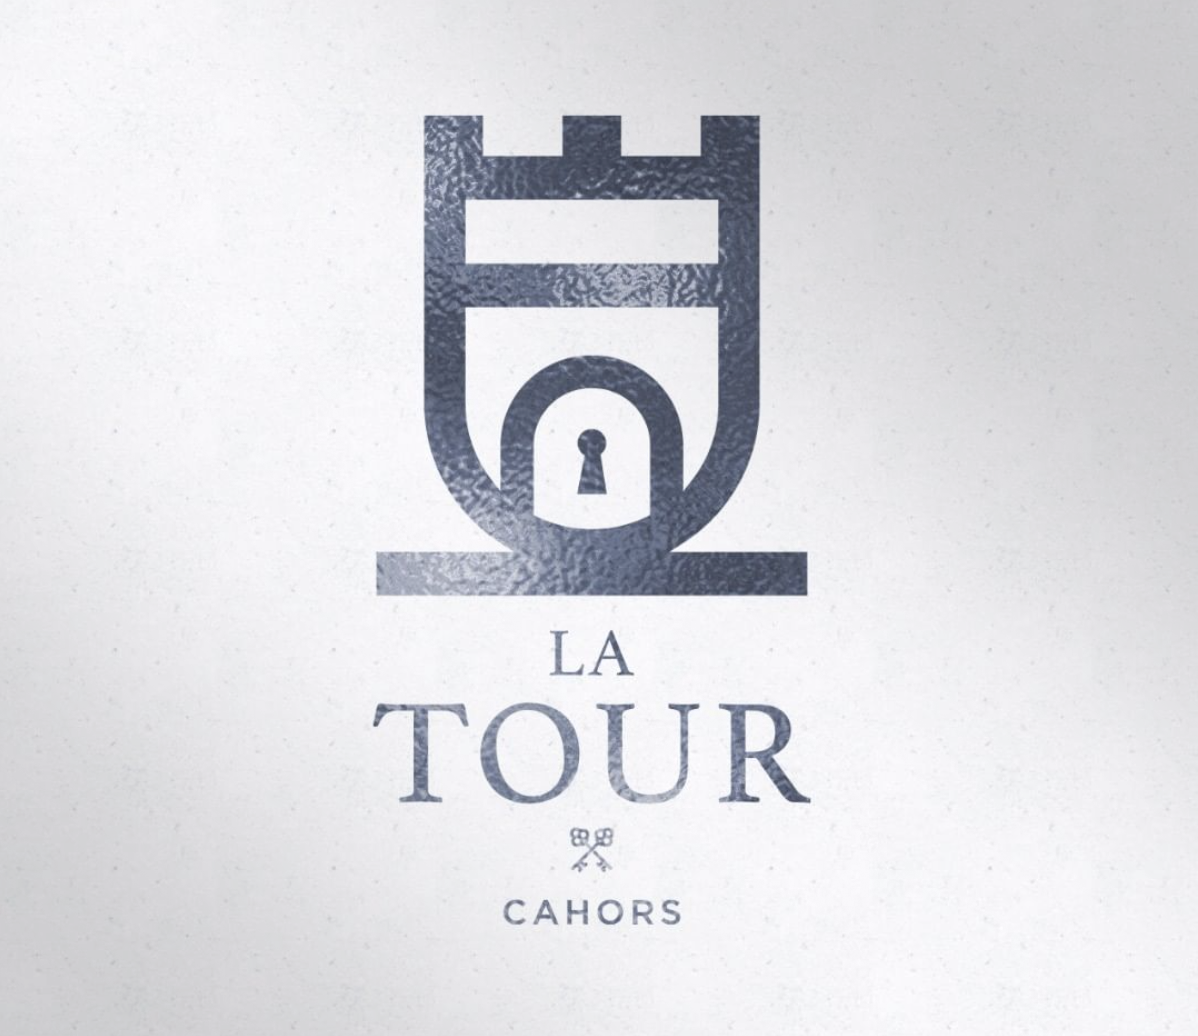 LA TOUR – CAHORS